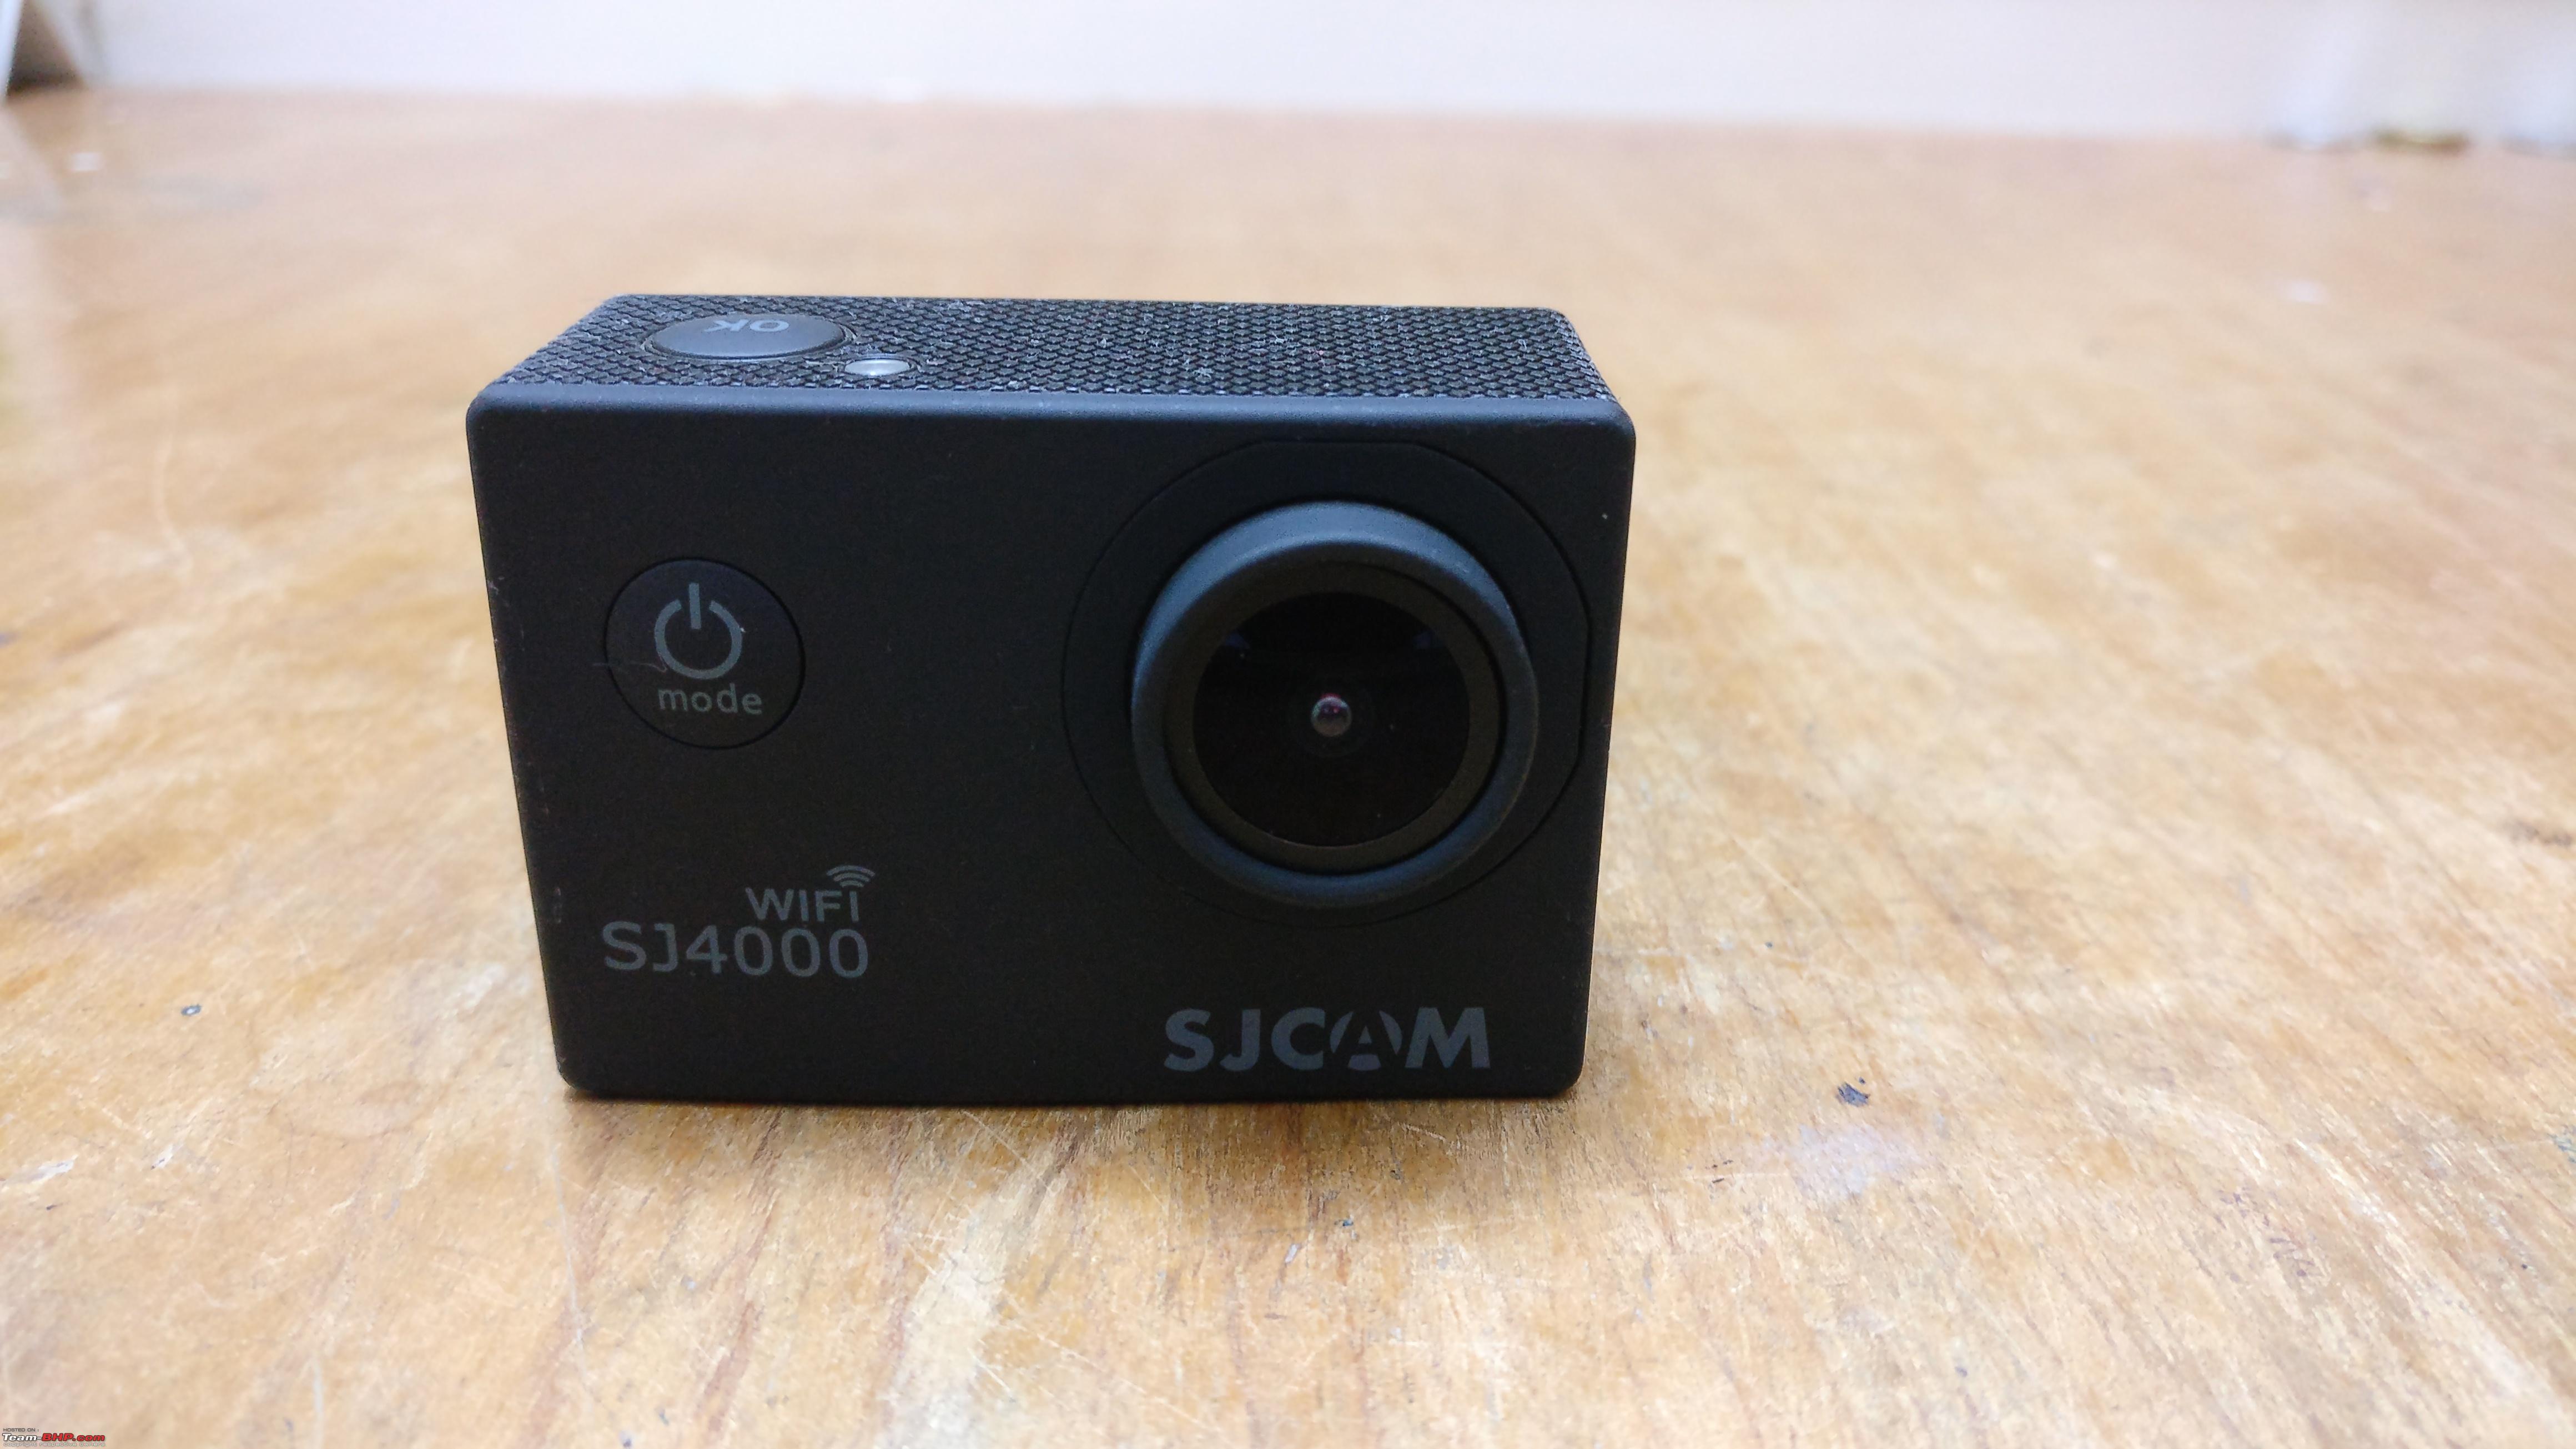 Del Sur Oscuro Celda de poder Review: SJCAM SJ4000 WiFi - Dash cam / Action cam Combo - Team-BHP